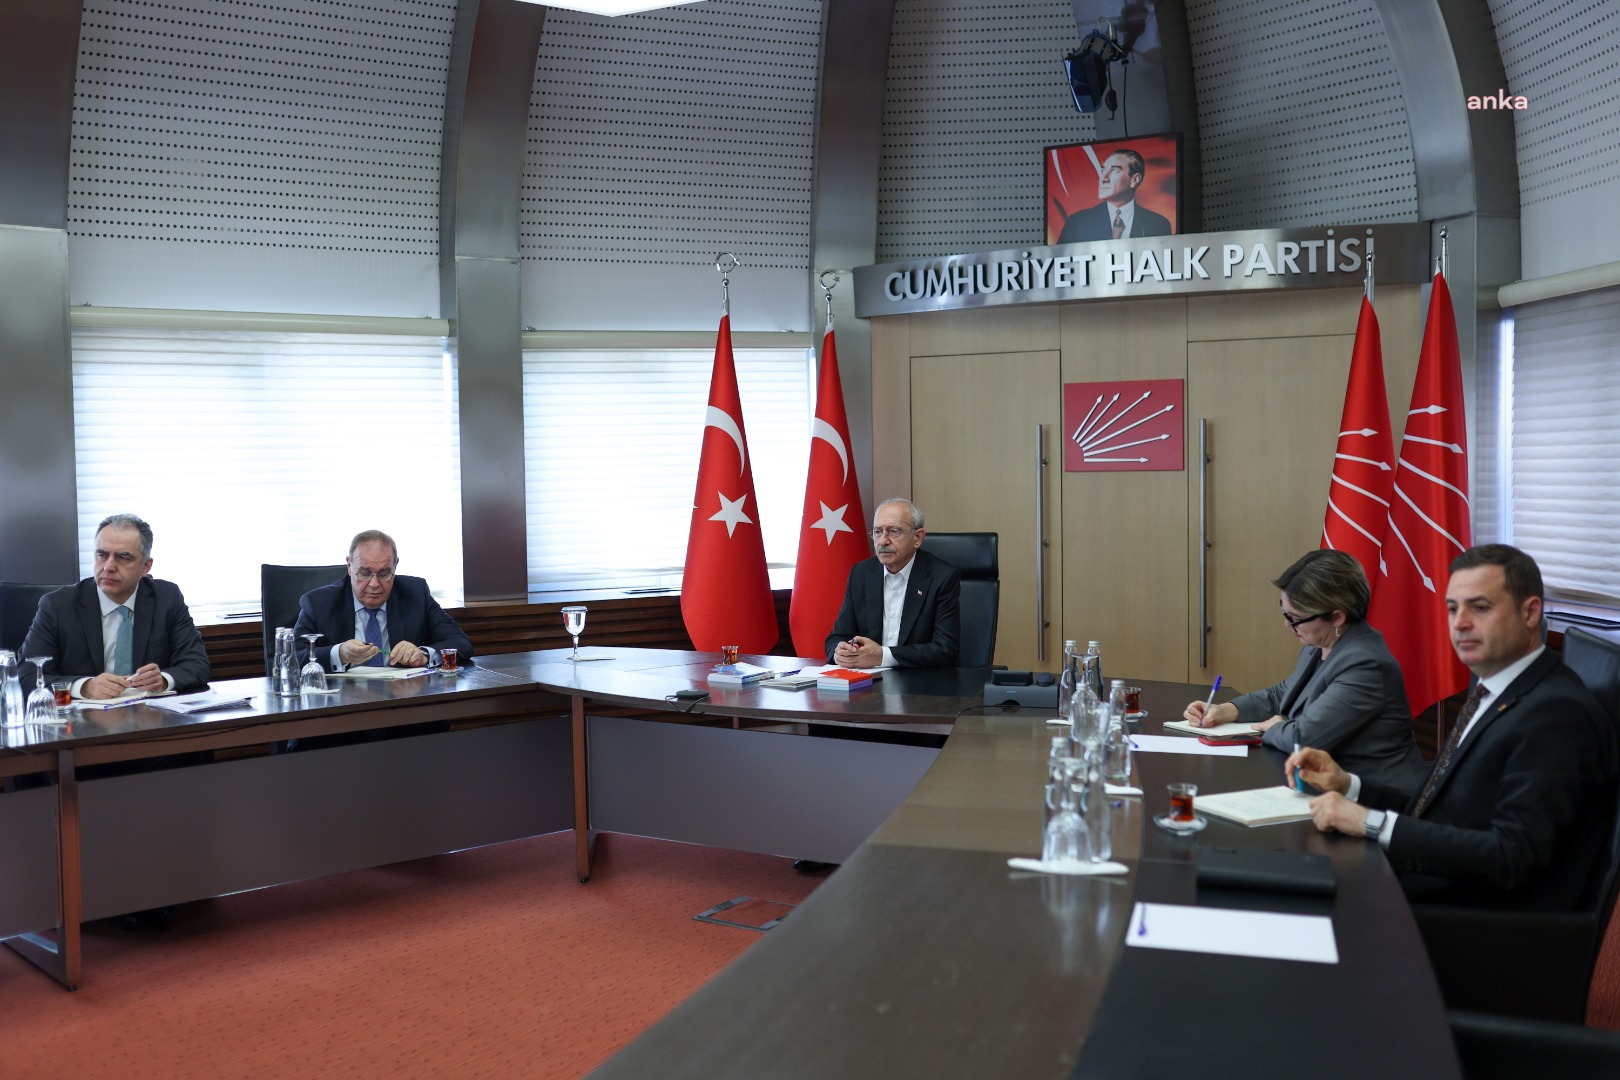 Kılıçdaroğlu, CHP Genel Merkezi’nde deprem konulu sunuma katıldı